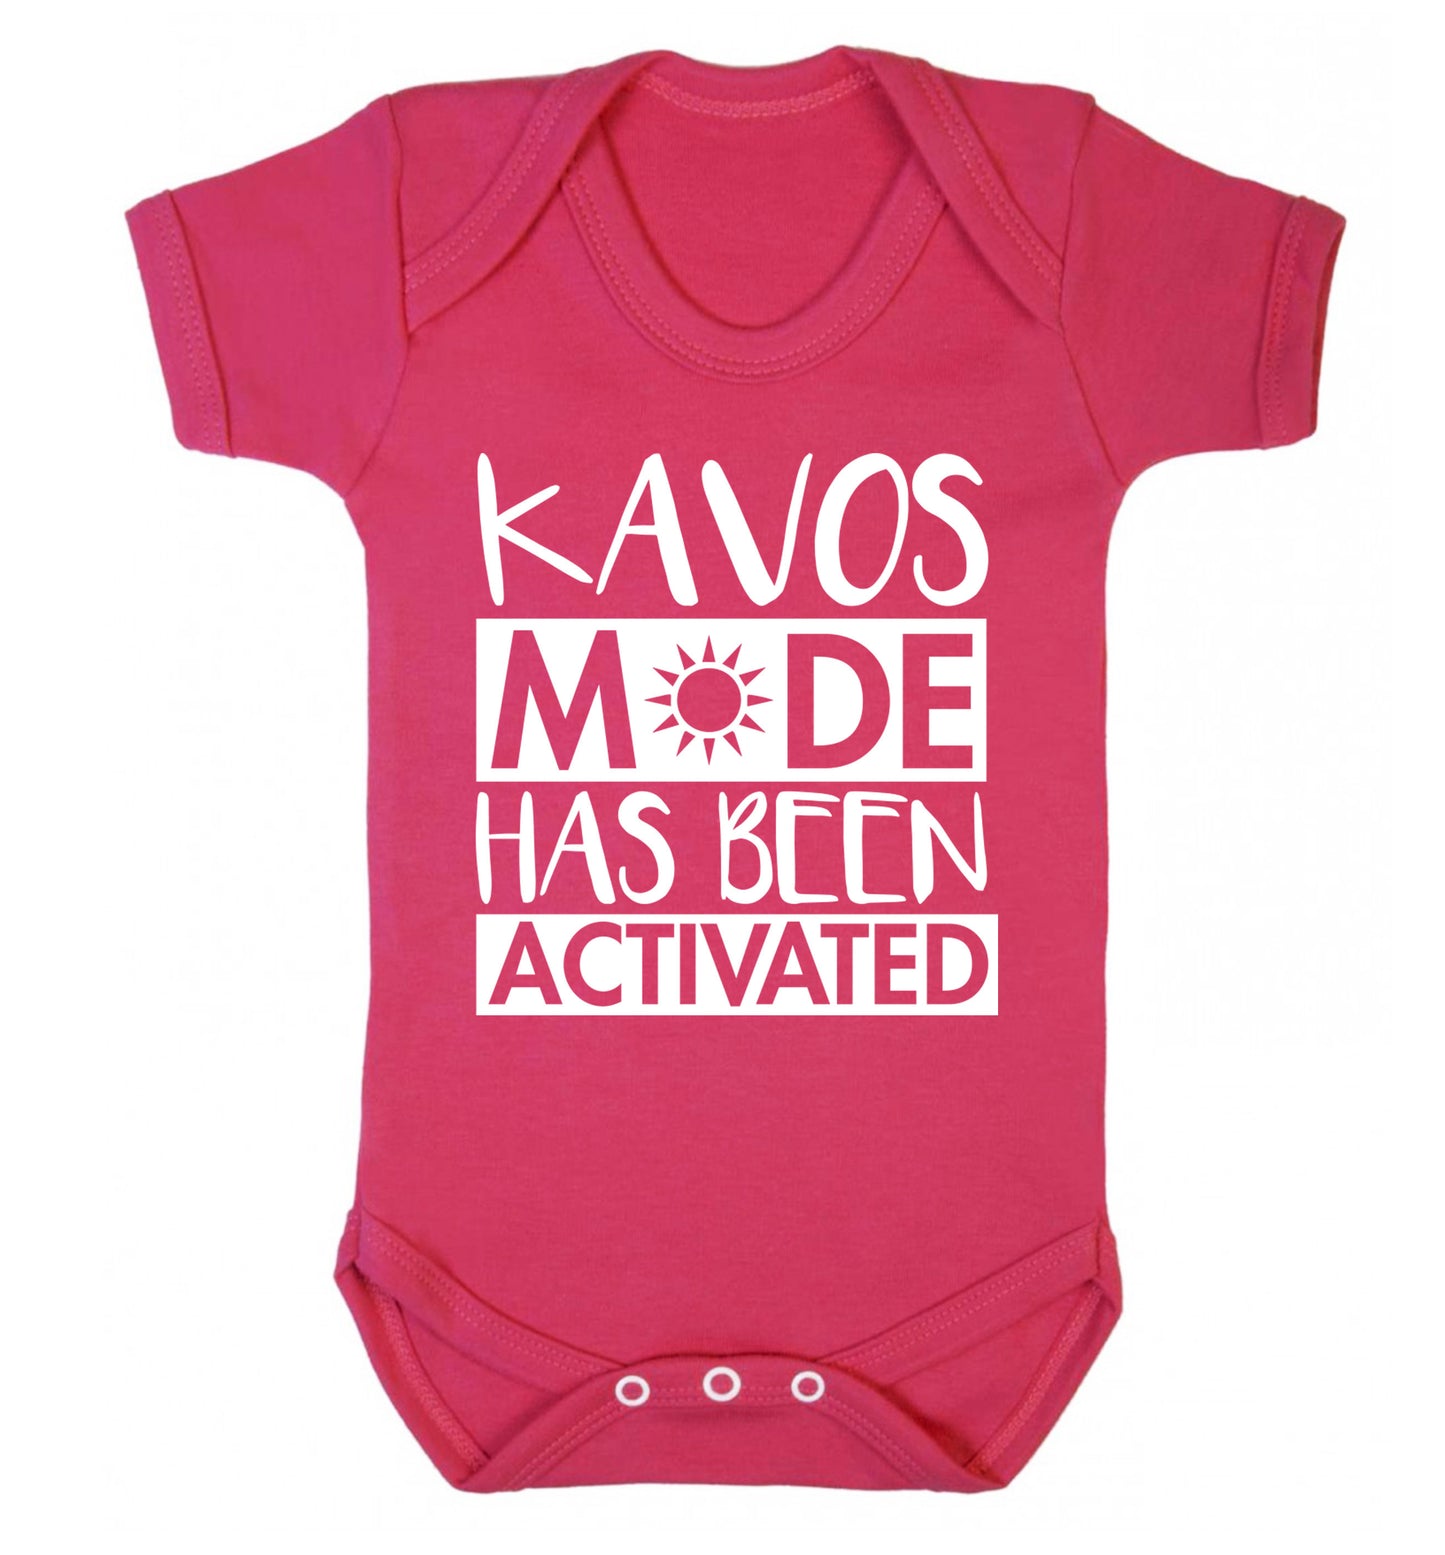 Kavos mode has been activated Baby Vest dark pink 18-24 months